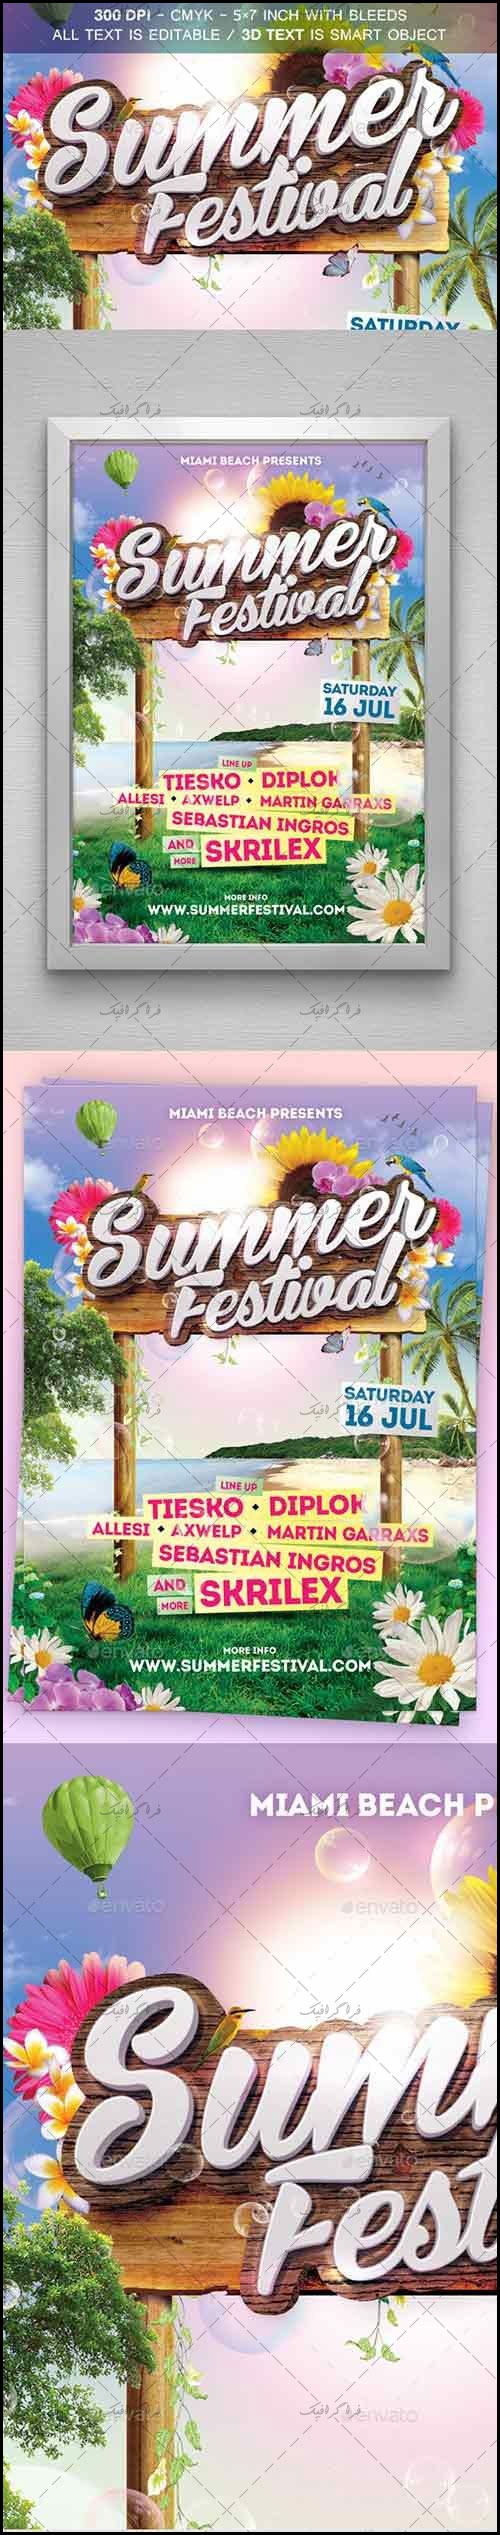 دانلود فایل لایه باز فتوشاپ پوستر تبلیغاتی جشنواره تابستانی